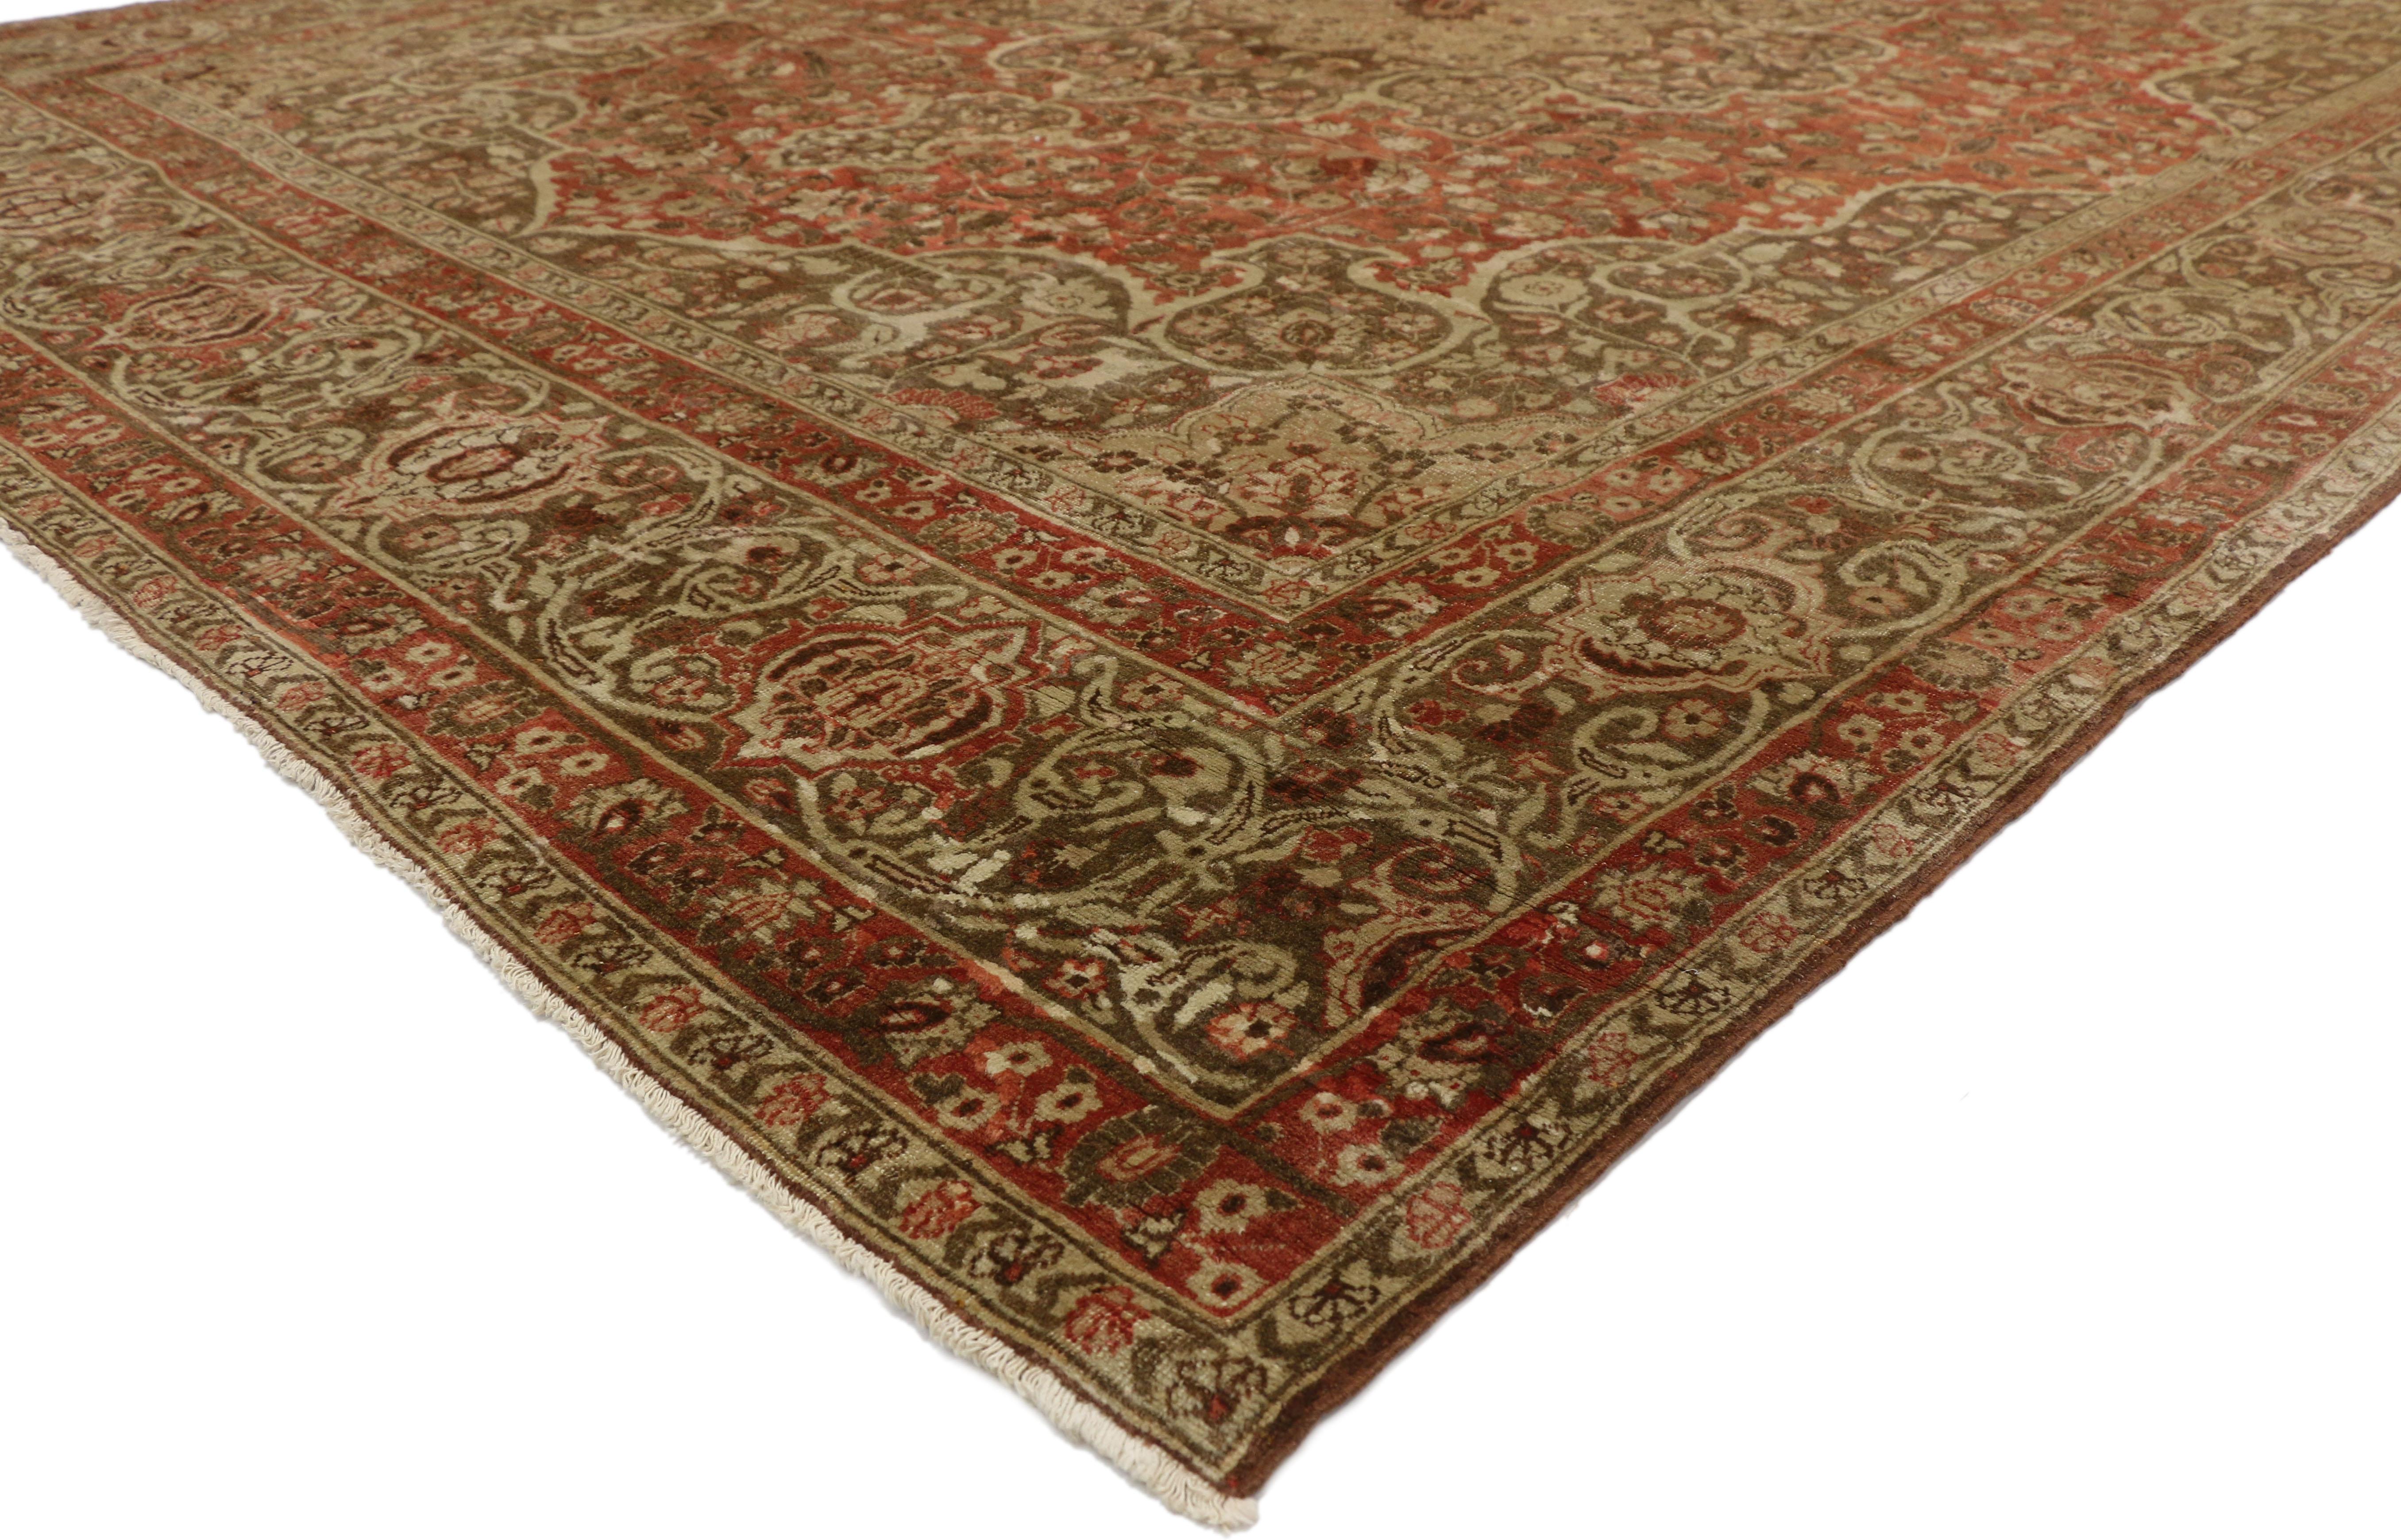 50392 Haji Khalili Antiker persischer Täbris-Teppich mit rustikalem Jugendstil. Dieser antike persische Teppich von Haji Khalili aus Täbris zeigt ein beigefarbenes Medaillon mit acht Punkten, das in einem braunen, kegelförmigen Medaillon in der